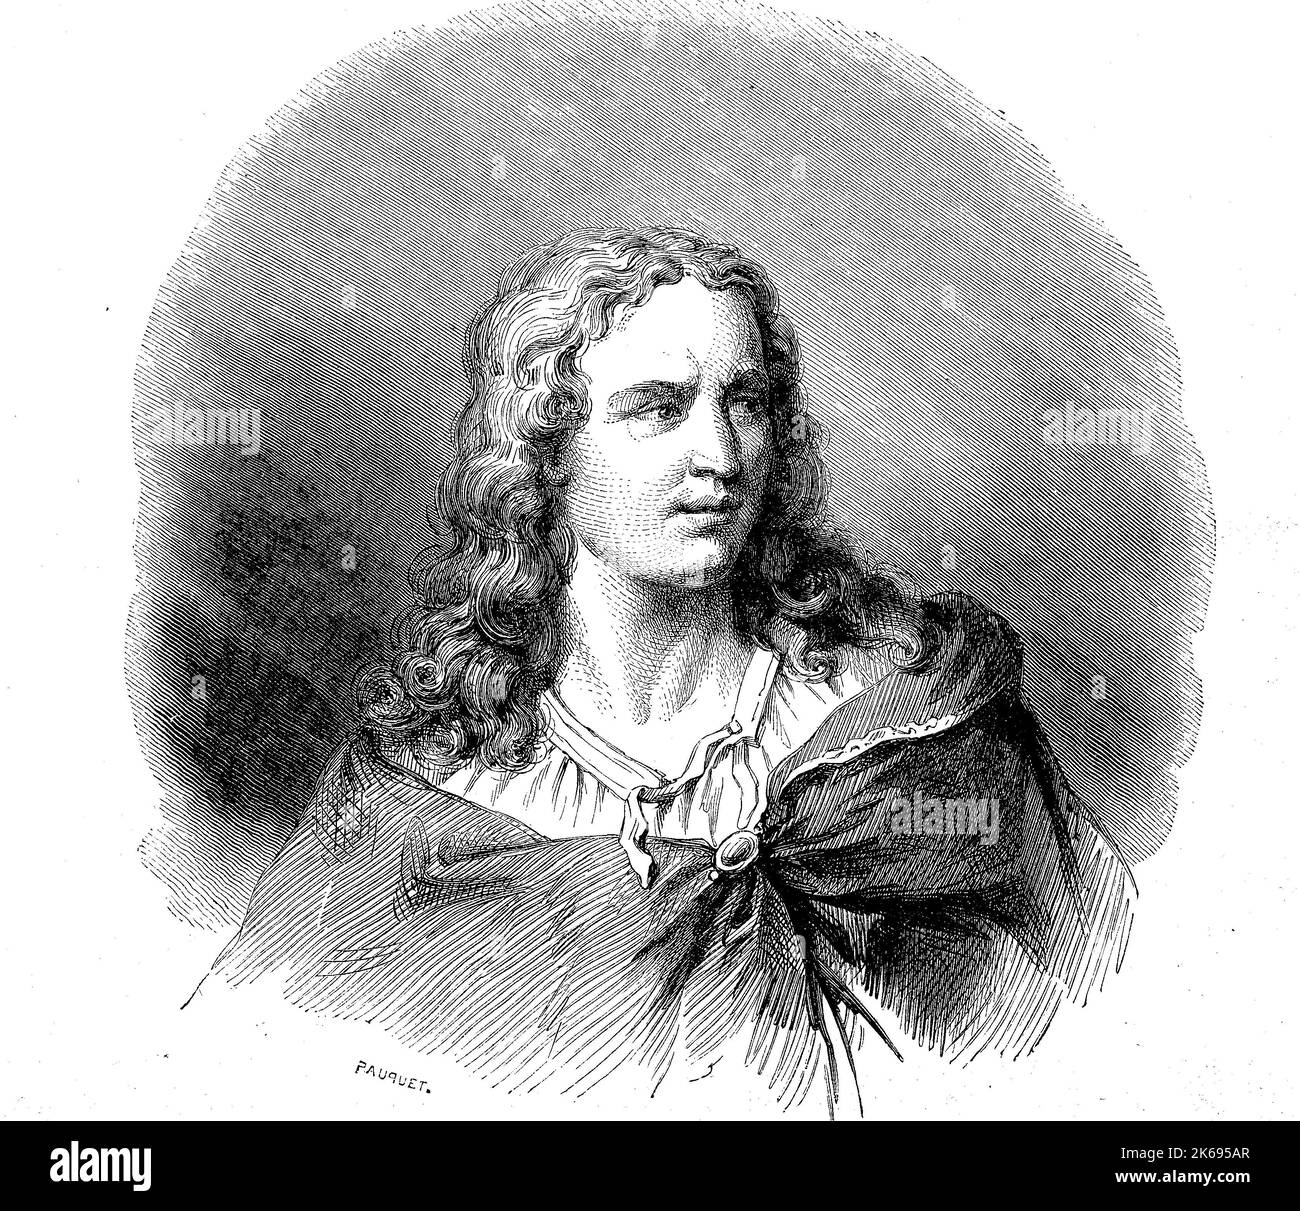 L'amélioration de la reproduction numérique, Gérard Audran ou Girard Audran, né 1640, est mort en 1703, était un graveur français d'origine, woodprint de th 19e siècle Banque D'Images